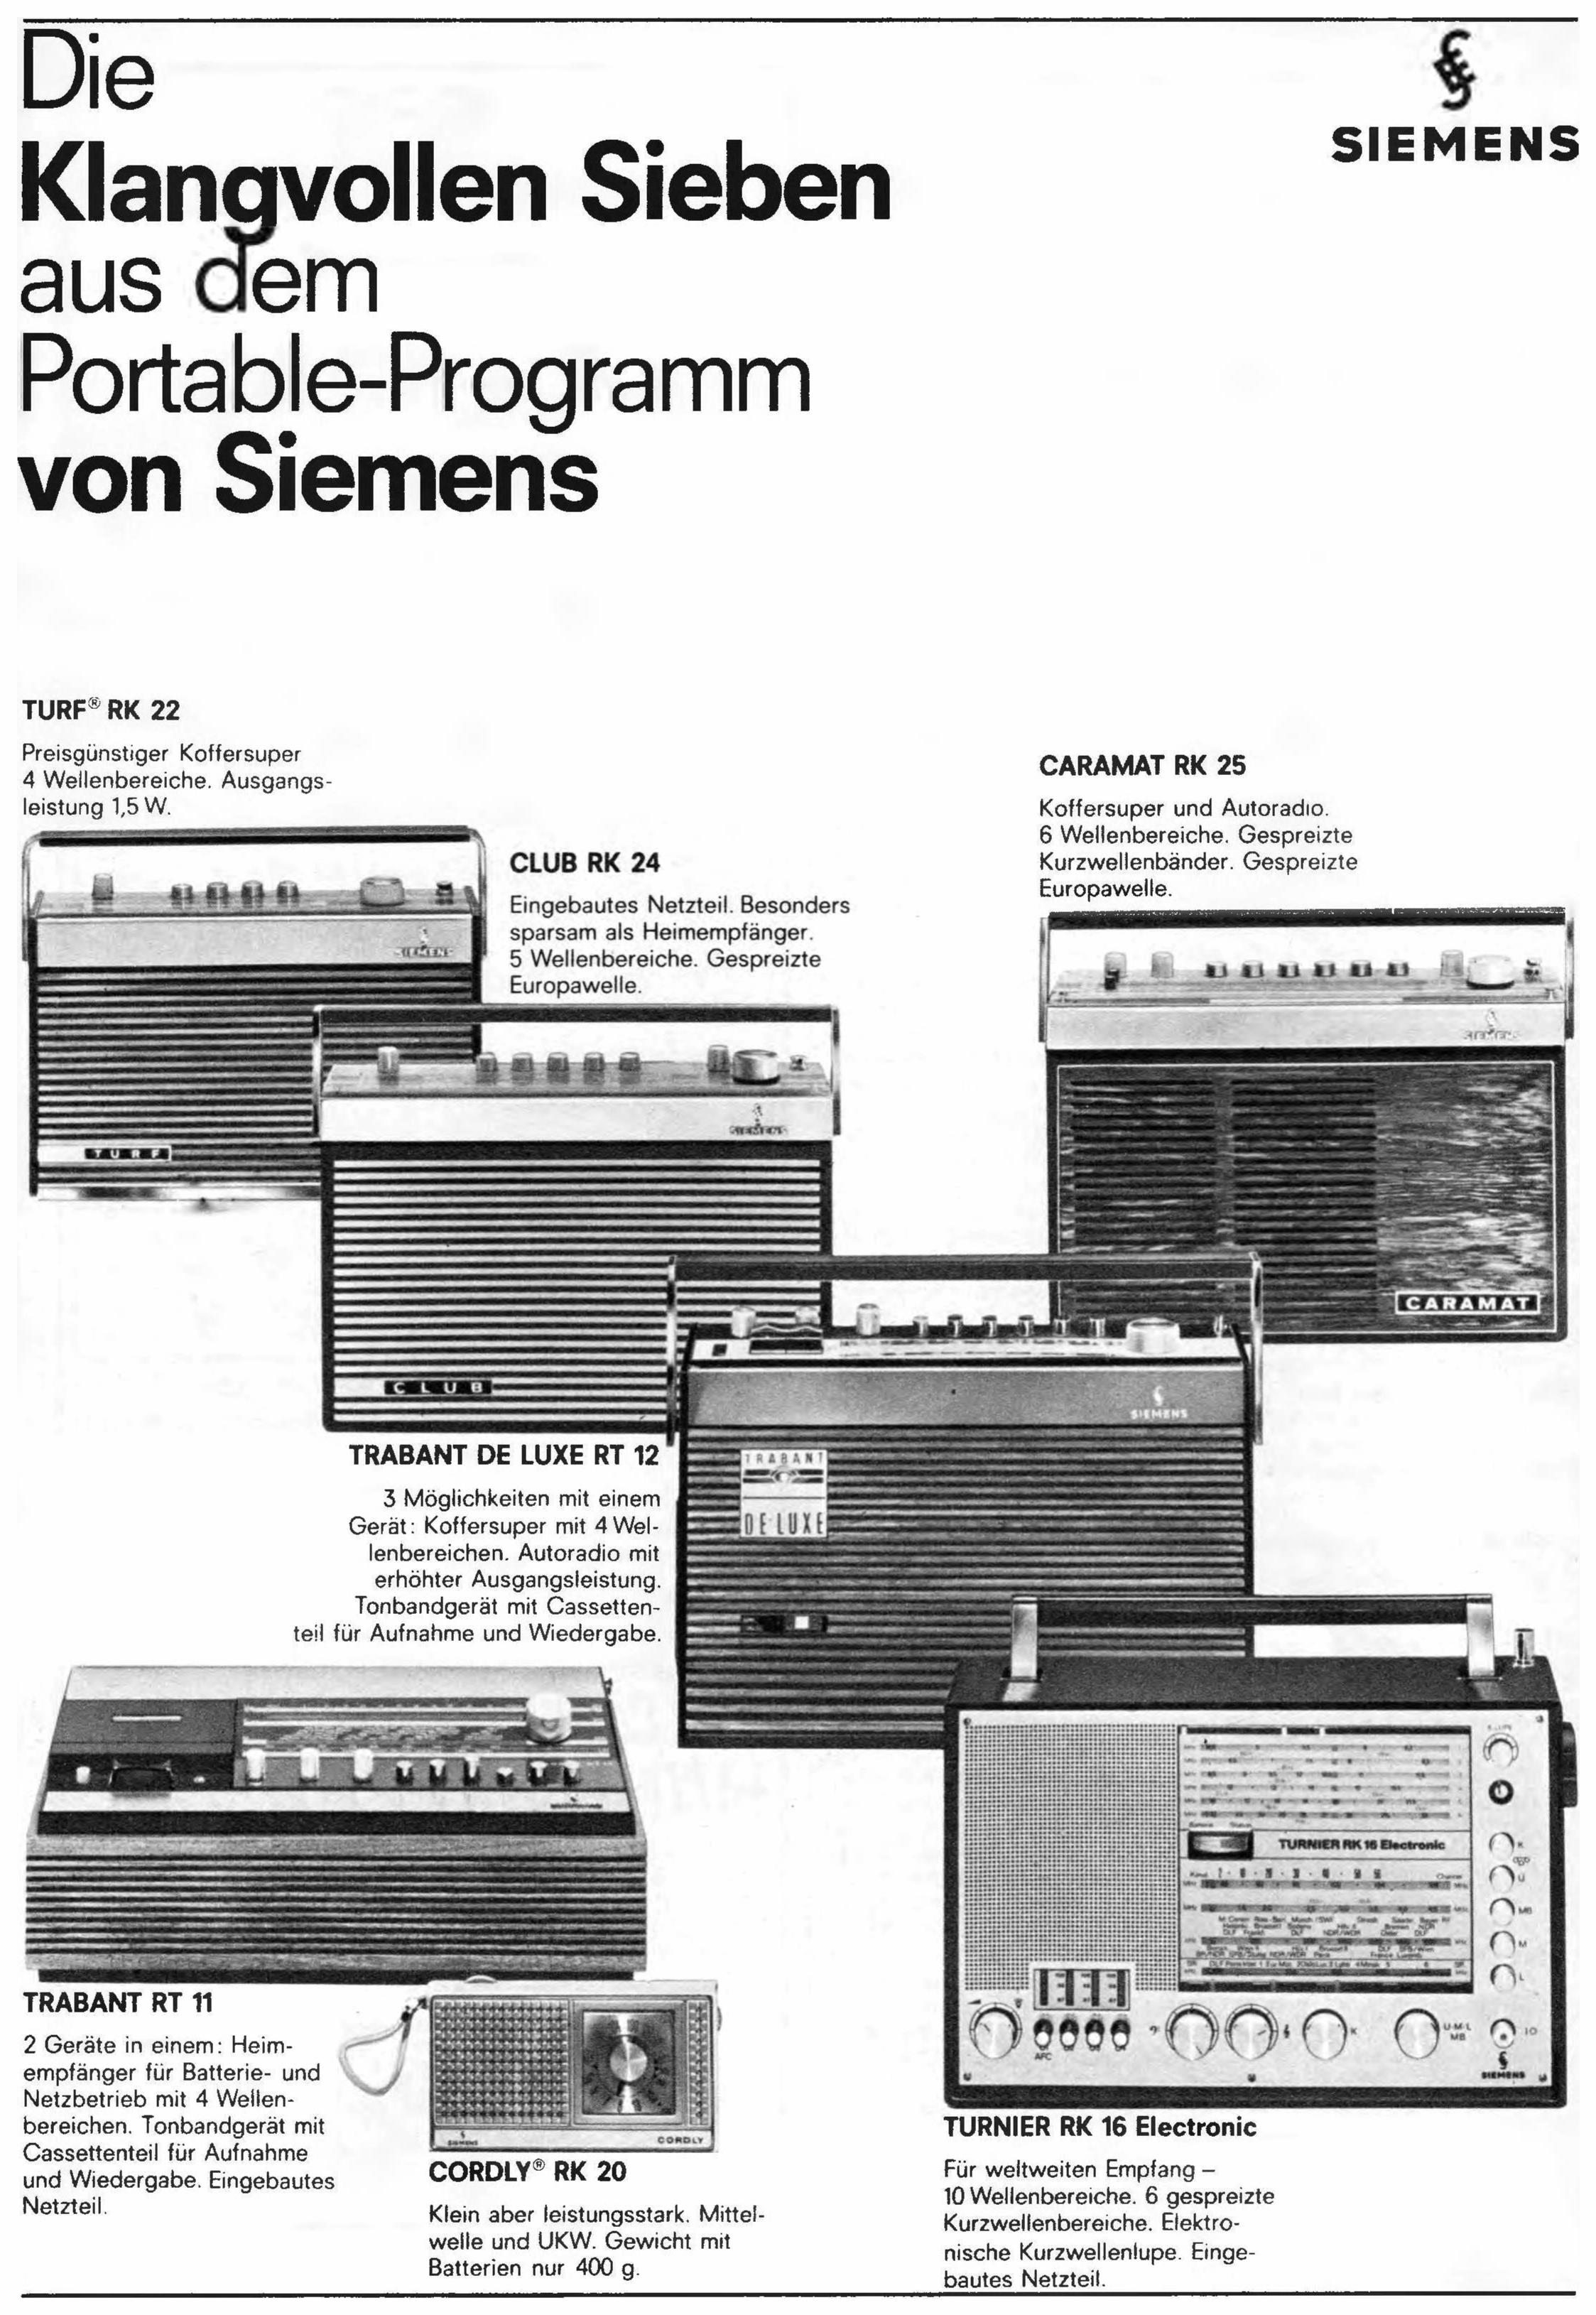 Siemens 1969 0.jpg